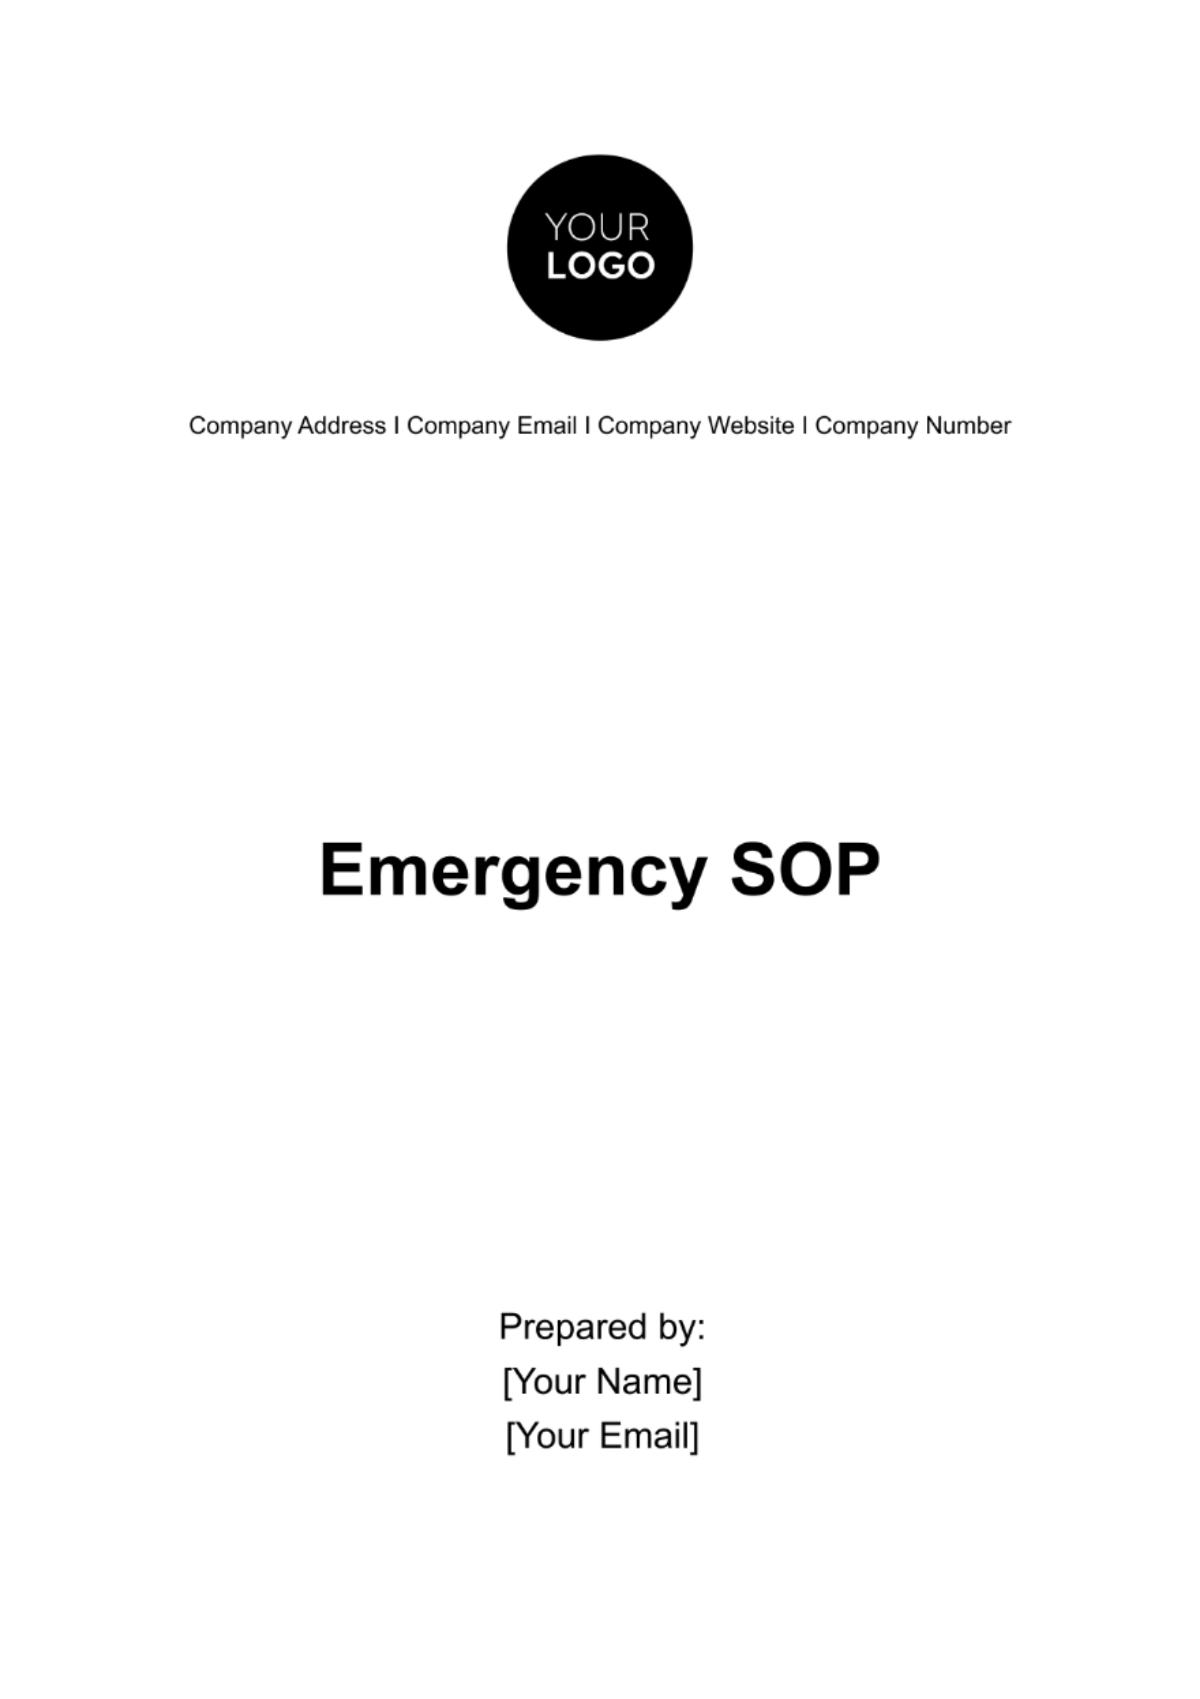 Emergency SOP Template